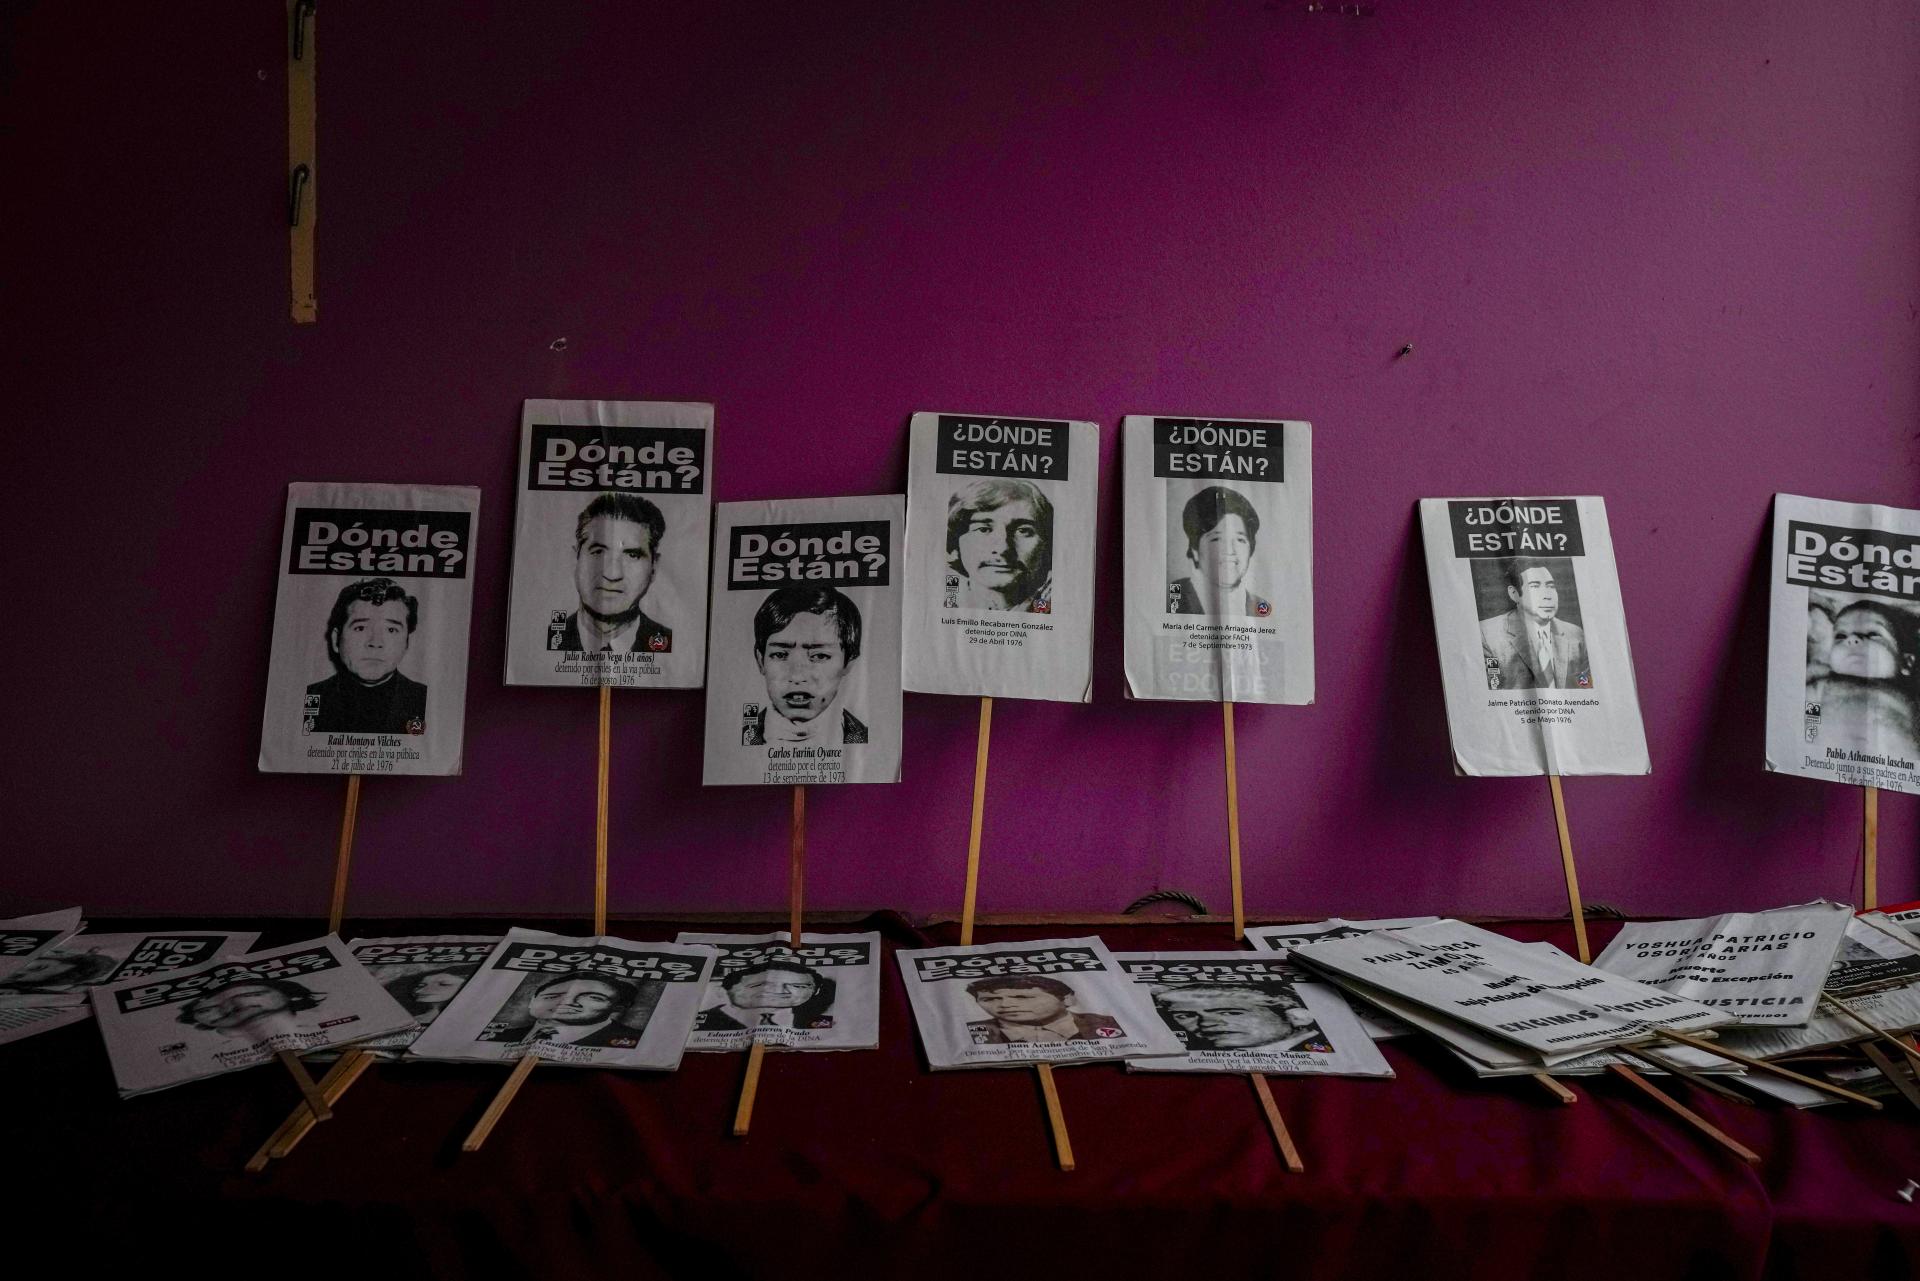 Čile spustí pátranie po osobách, ktoré zmizli počas Pinochetovej diktatúry